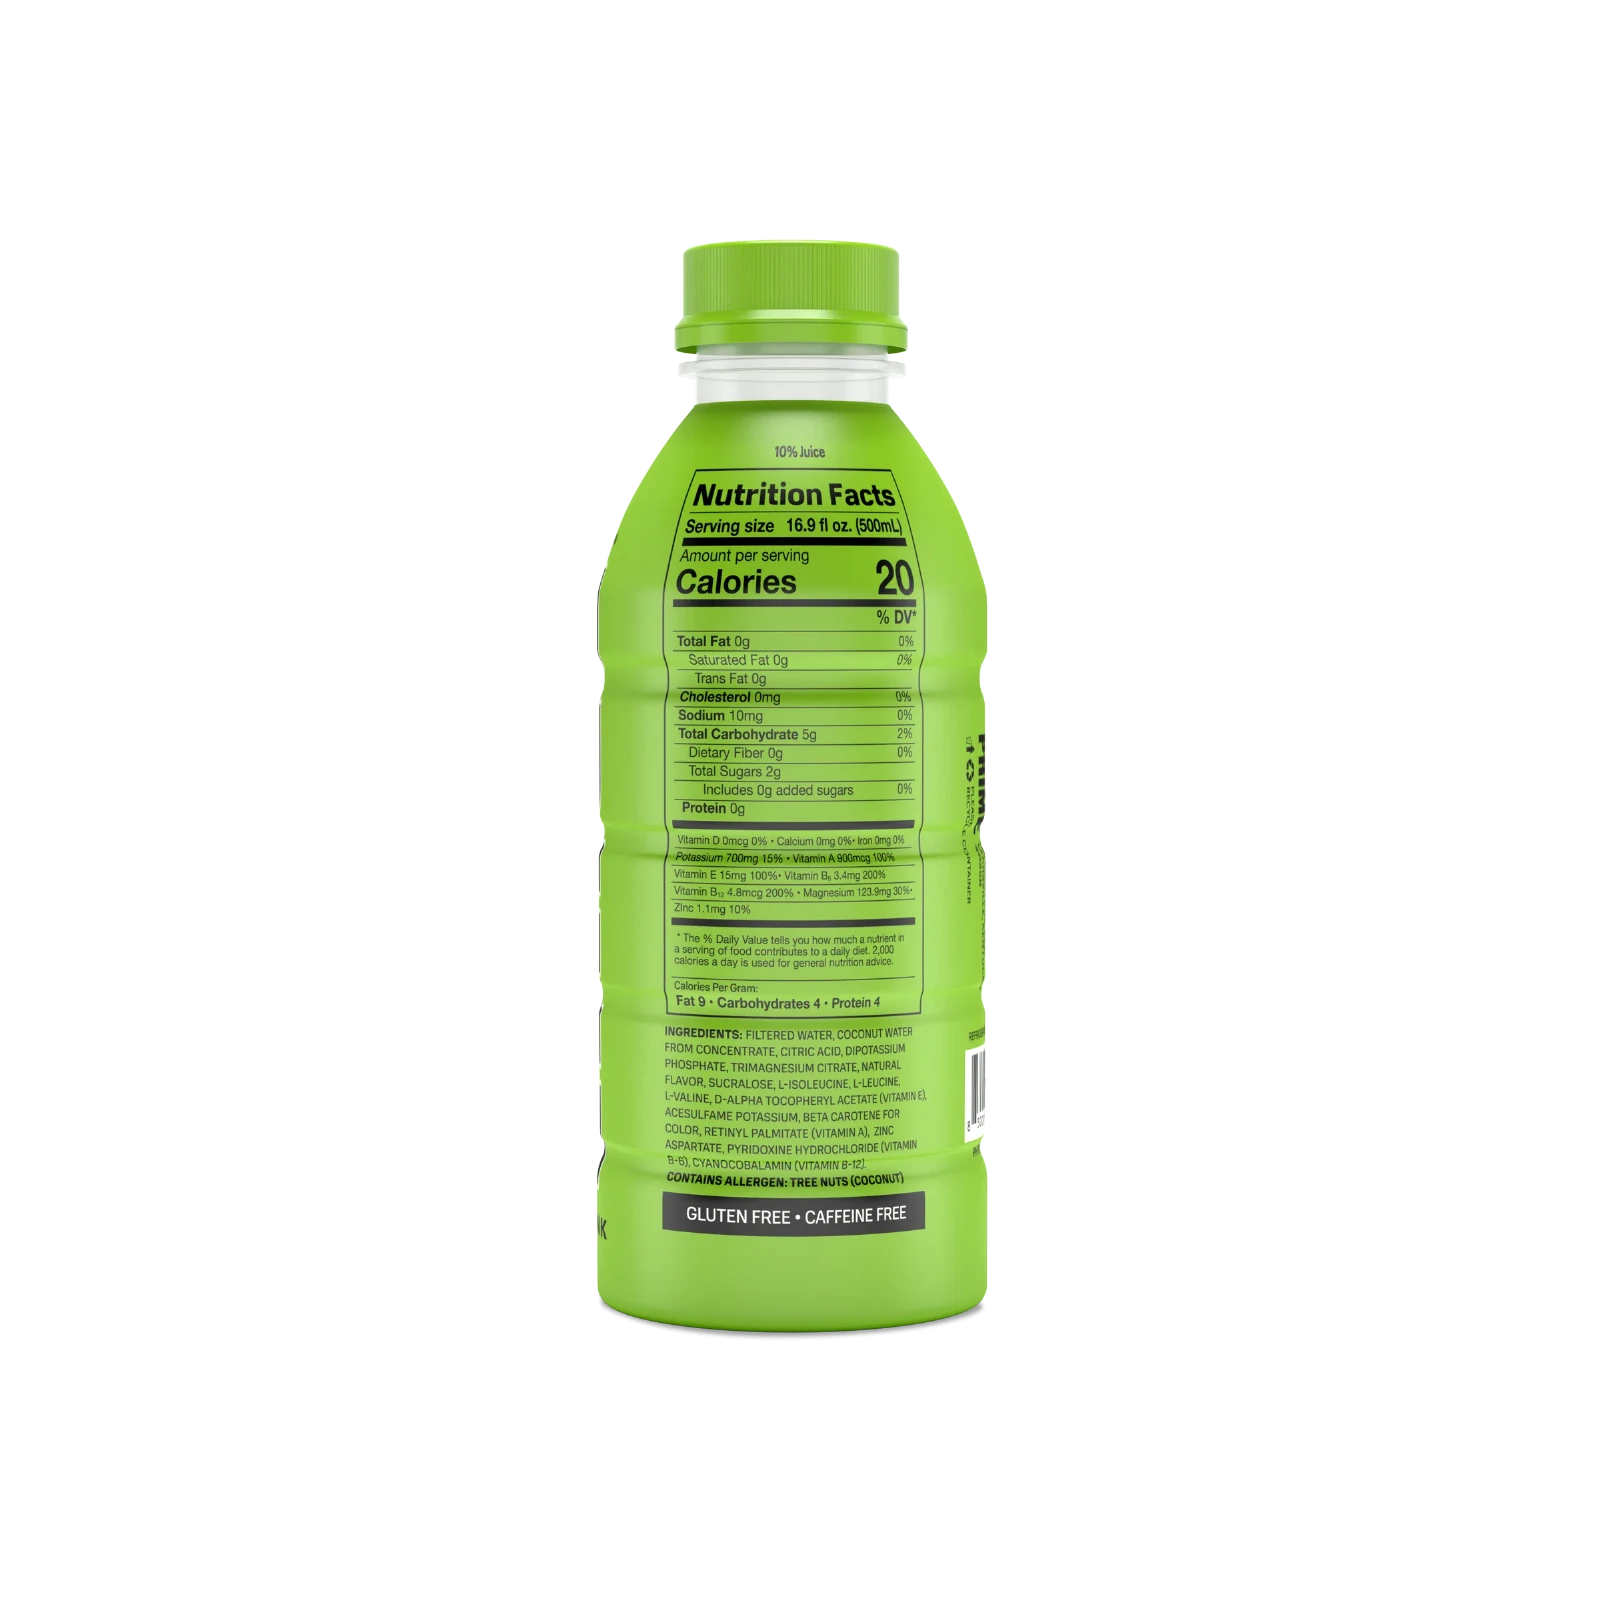 Prime Hydration - Sportdrink - Lemon Lime - 500 ml - Energy Drink von Logan Paul und KSI - Aus den USA 4